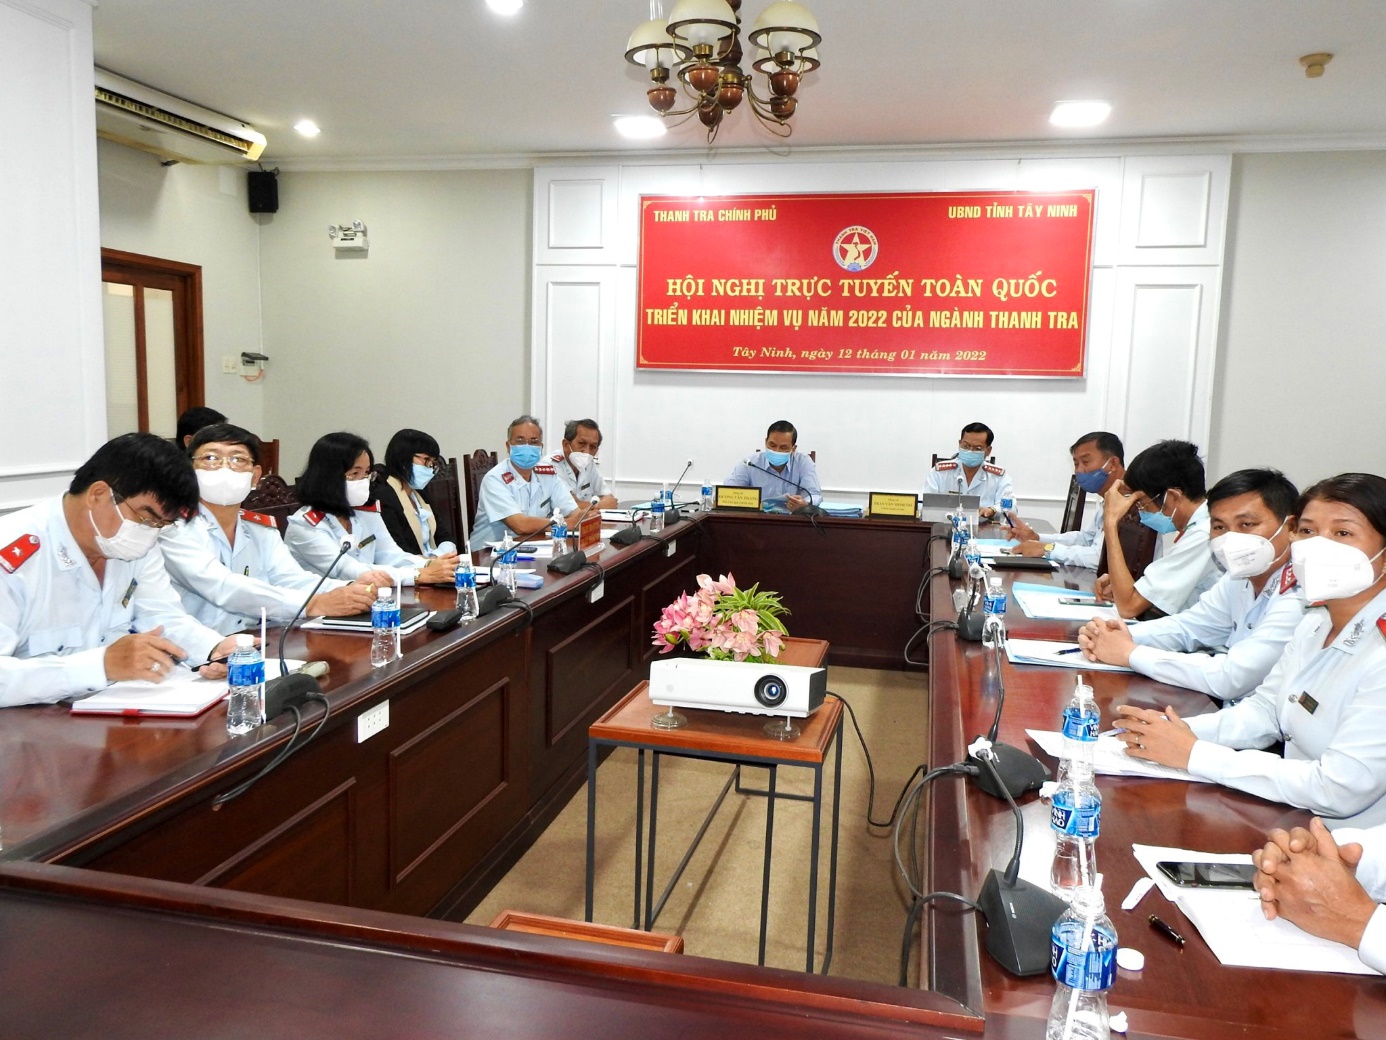 Tây Ninh: Tham dự Hội nghị trực tuyến toàn quốc tổng kết công tác Thanh tra năm 2021 và triển khai nhiệm vụ năm 2022 của ngành Thanh tra